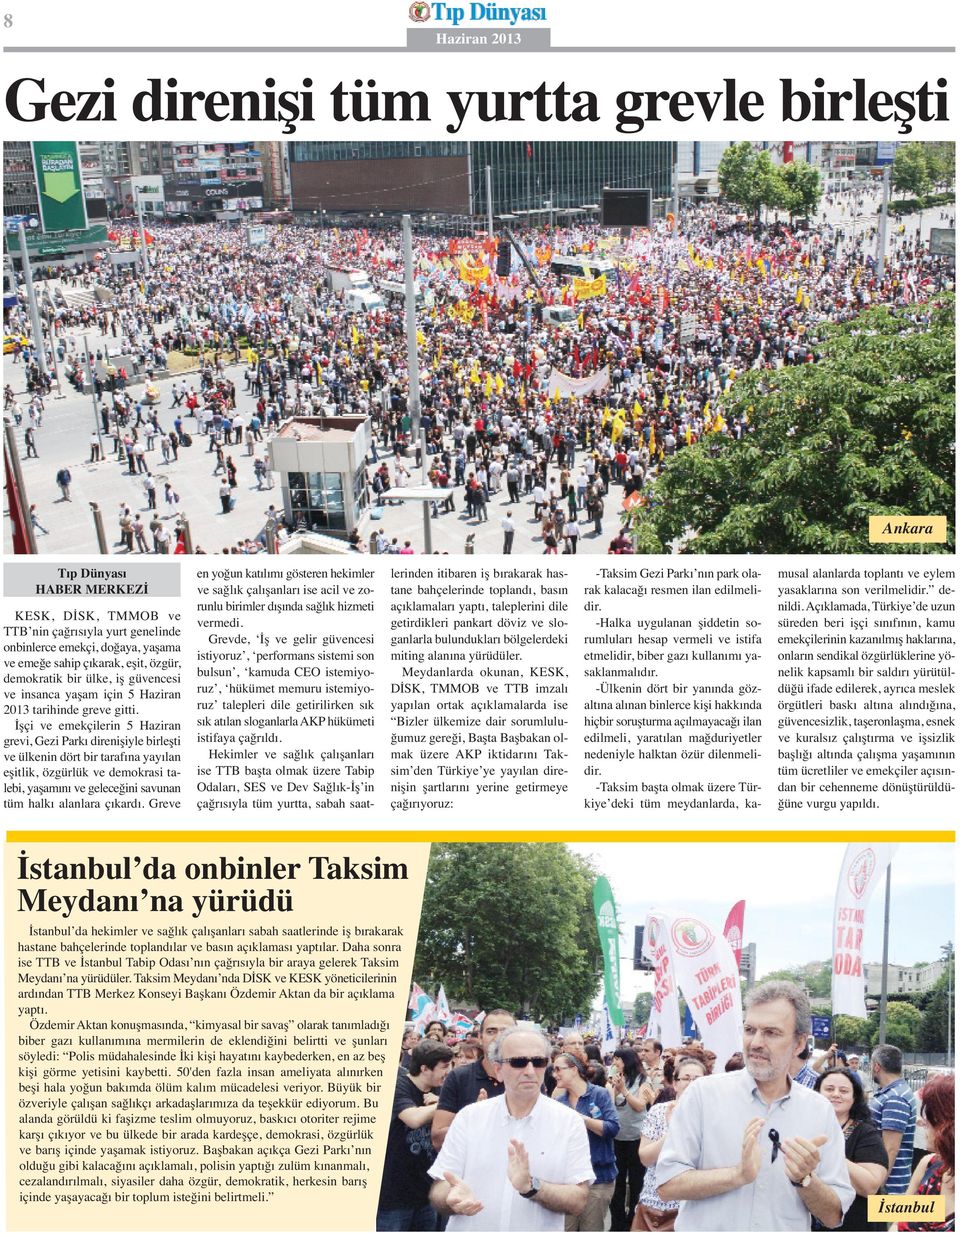 İşçi ve emekçilerin 5 Haziran grevi, Gezi Parkı direnişiyle birleşti ve ülkenin dört bir tarafına yayılan eşitlik, özgürlük ve demokrasi talebi, yaşamını ve geleceğini savunan tüm halkı alanlara